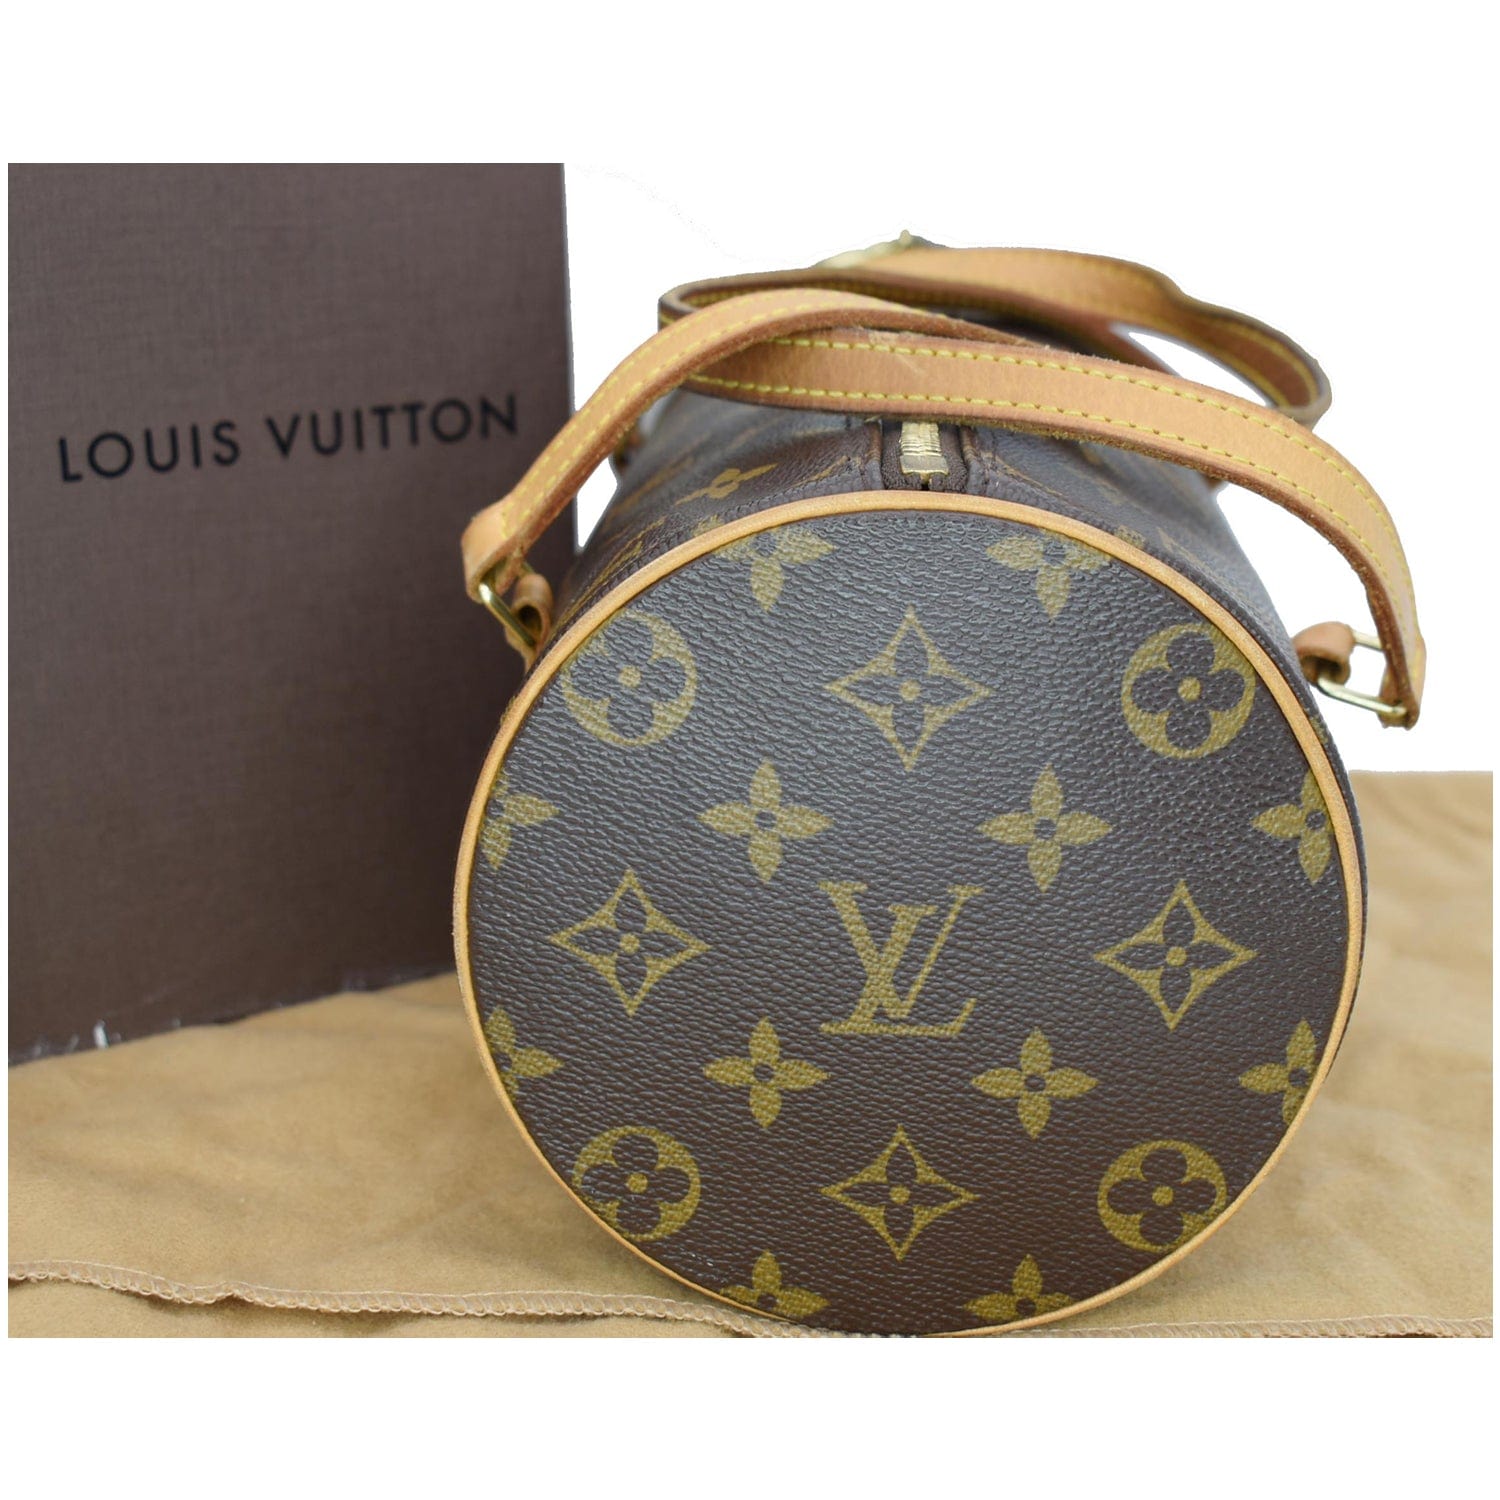 Louis Vuitton Comme des Garcons Papillon 26 Tote Bag